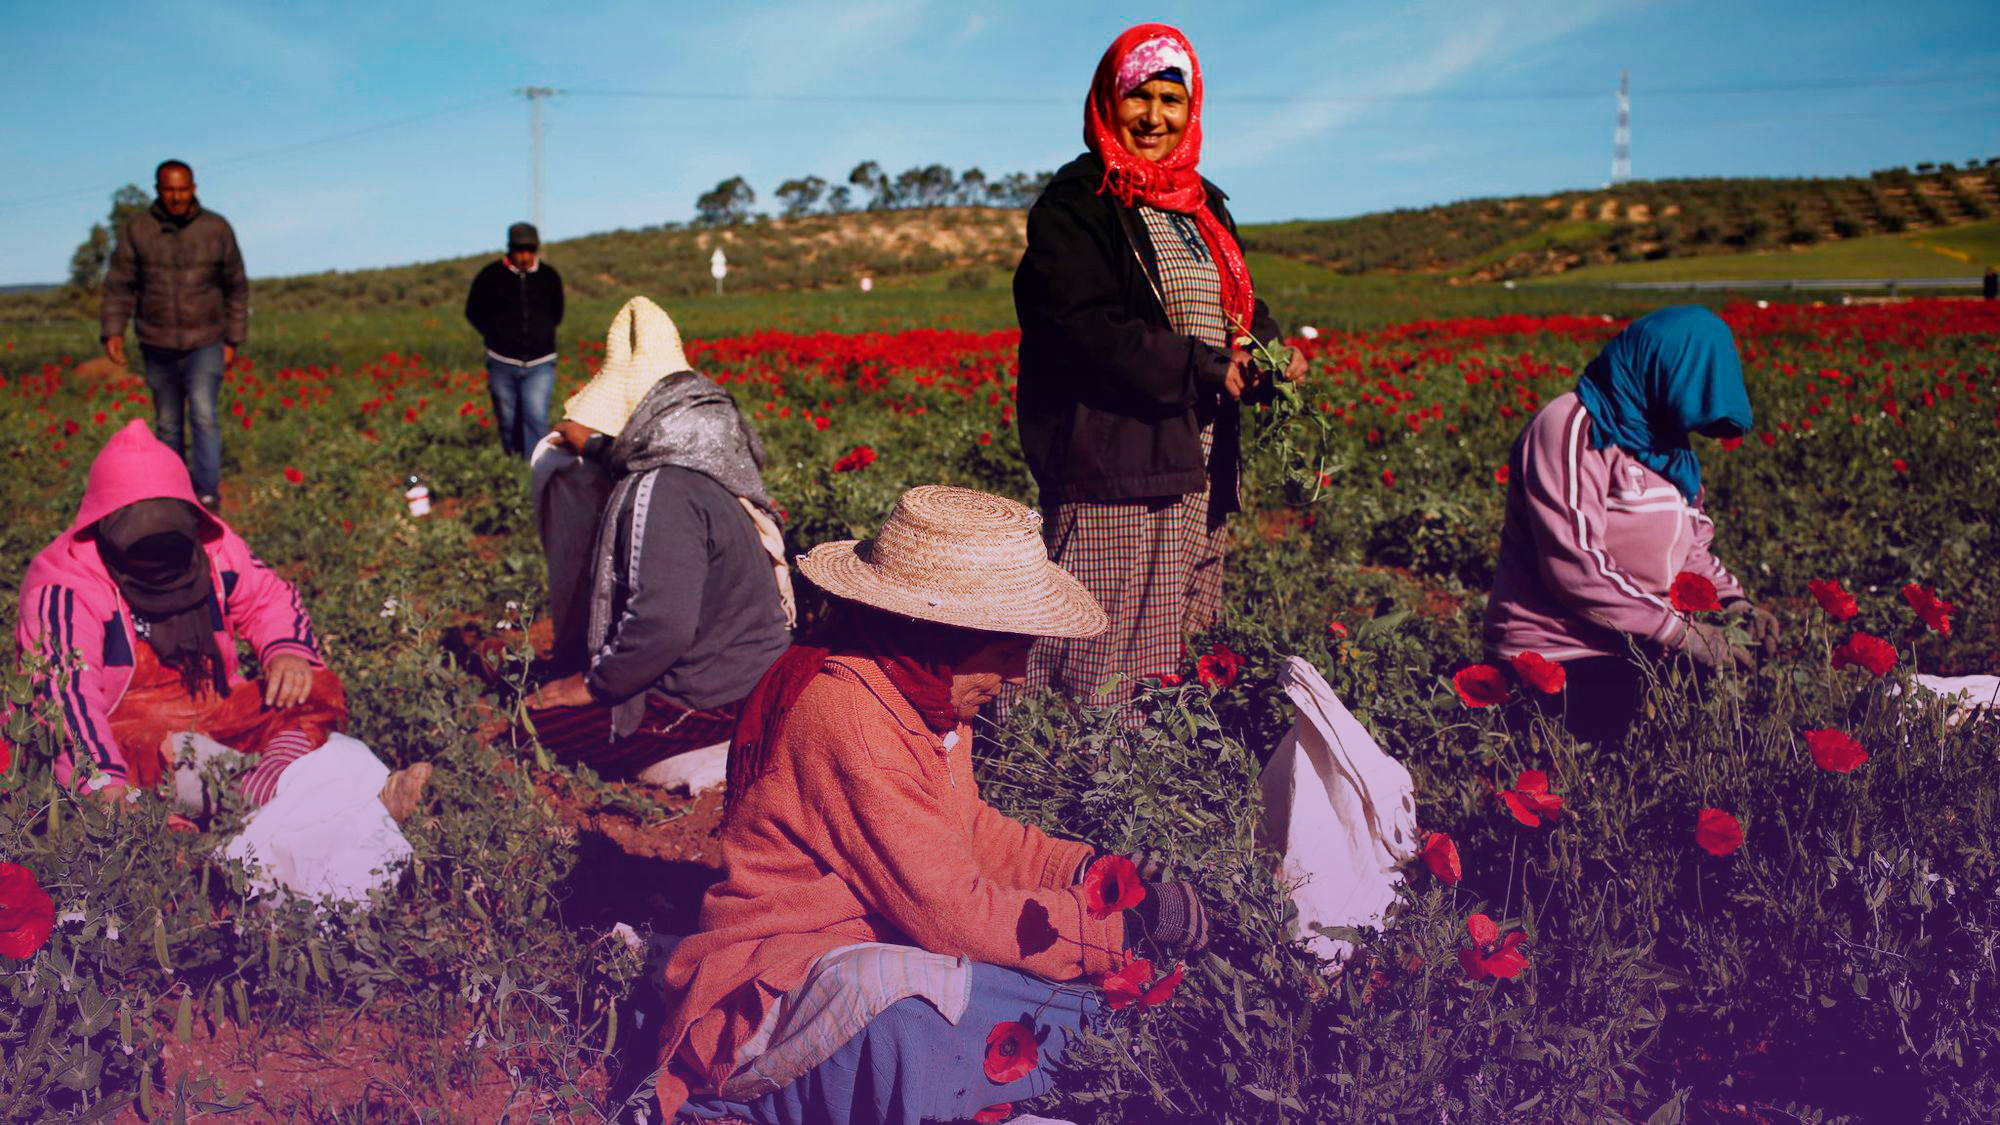 المرأة من أجل الحق في الأرض و الميراث المساواة في تونس